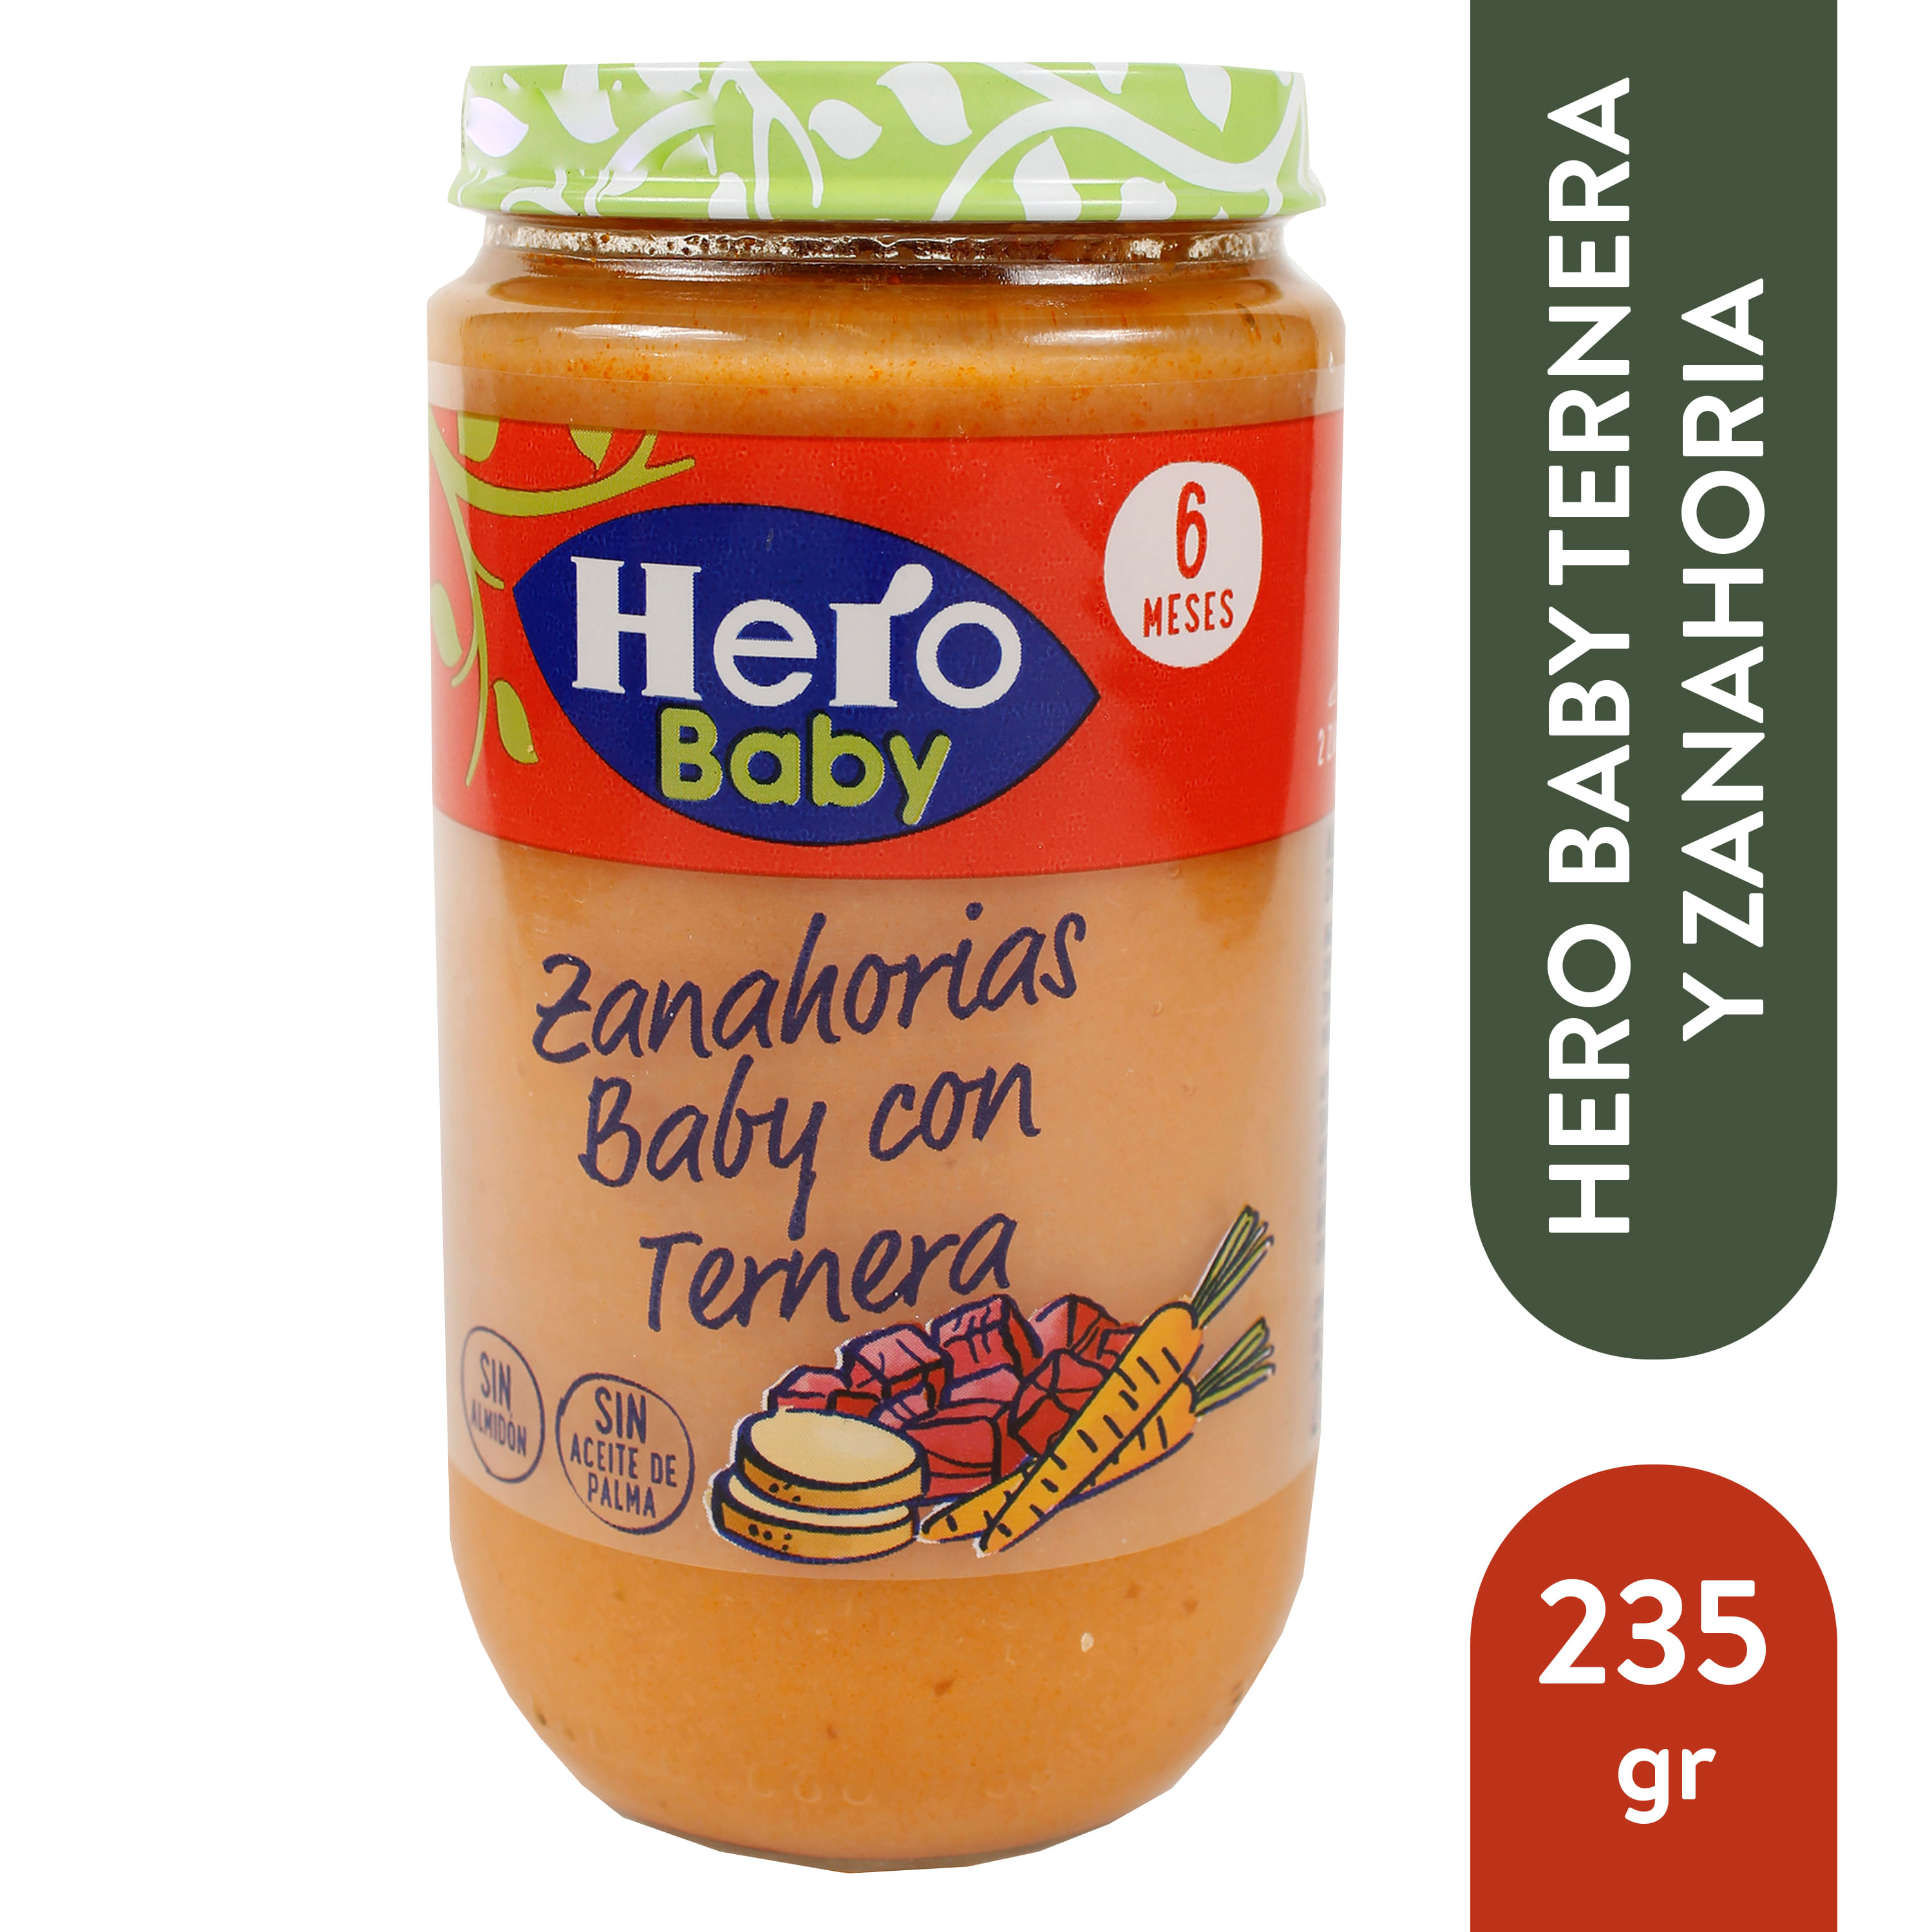 Zanahorias Baby con Ternera 6 Meses Hero Baby 235 g. – Super Carnes - Ahora  con Delivery